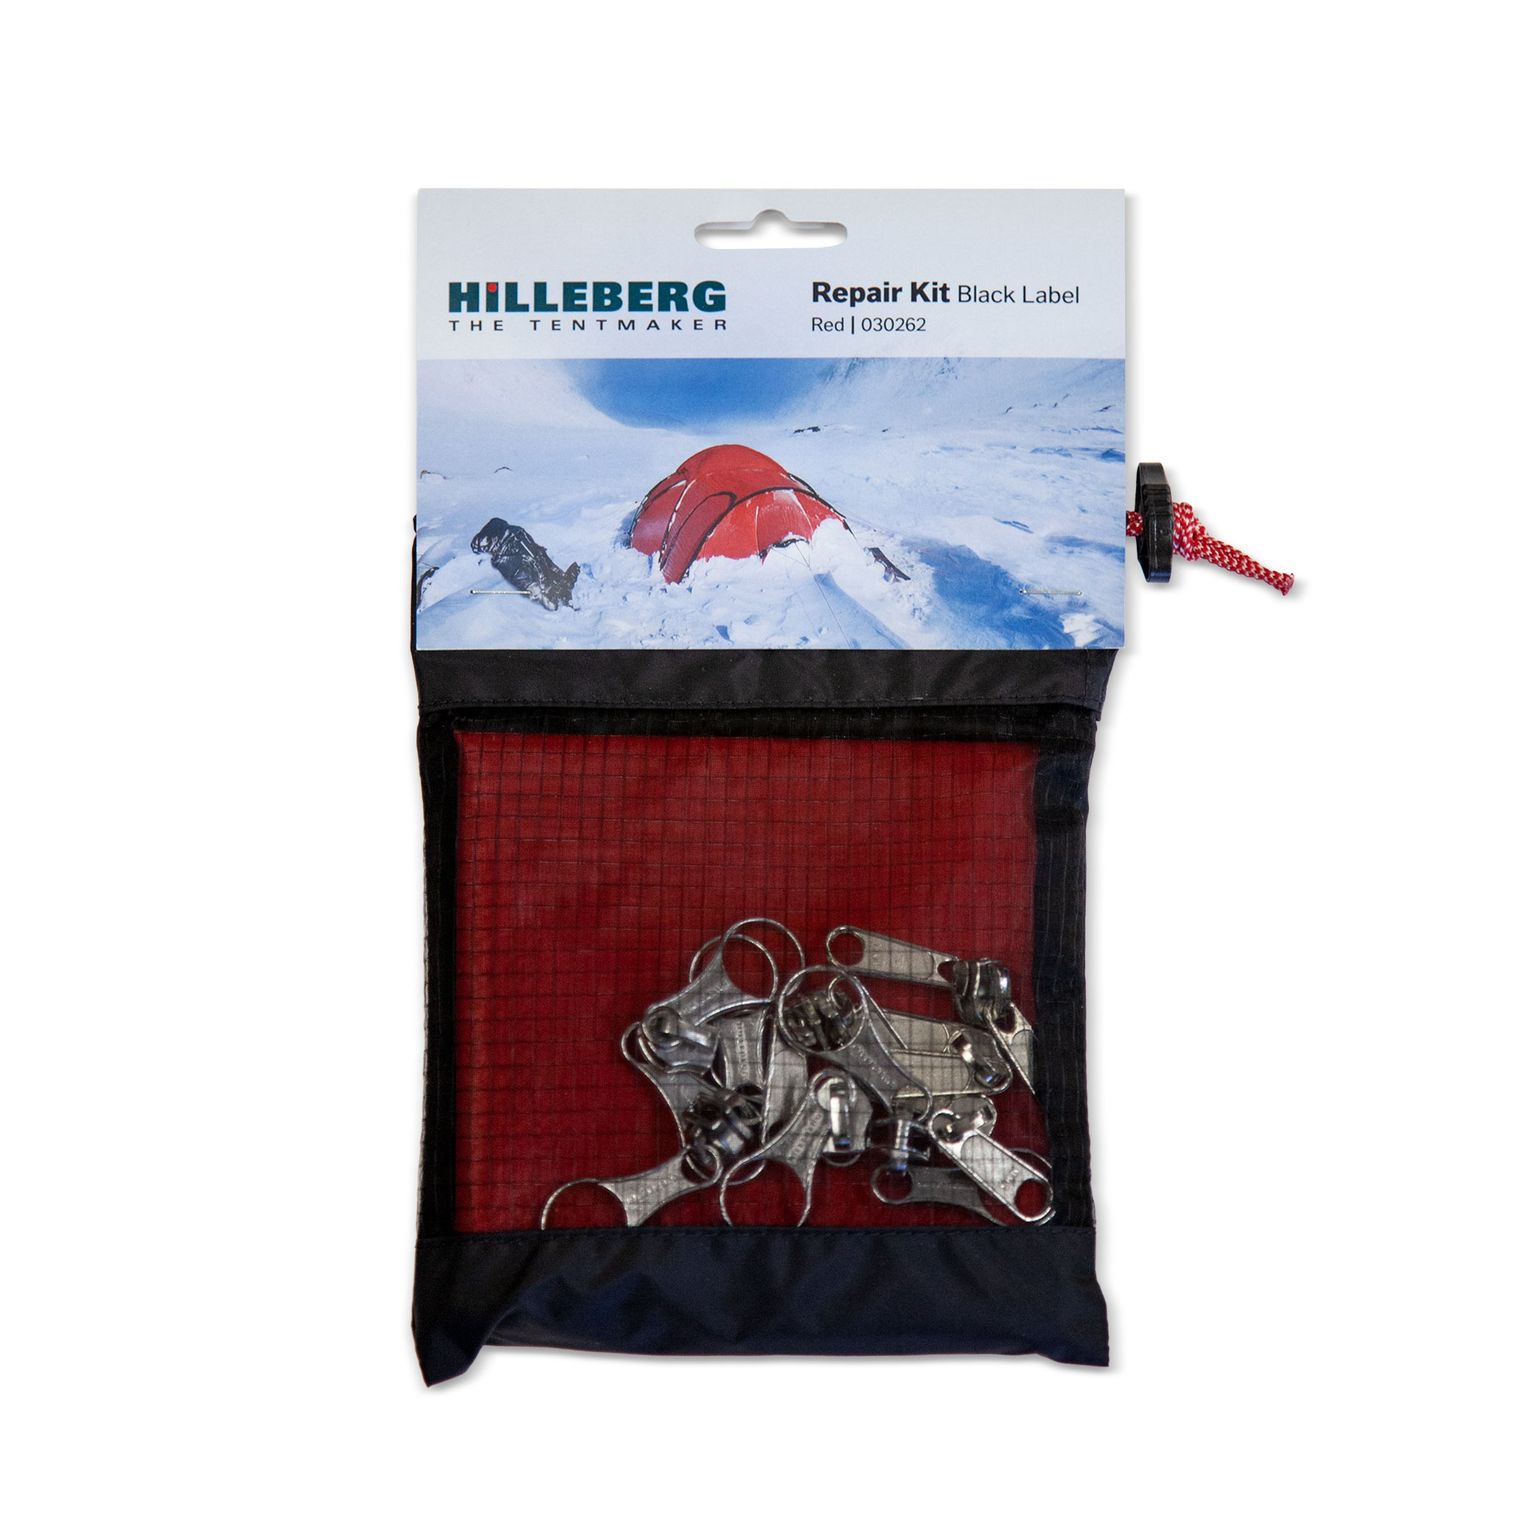 Hilleberg Repair Kit Black Label Red